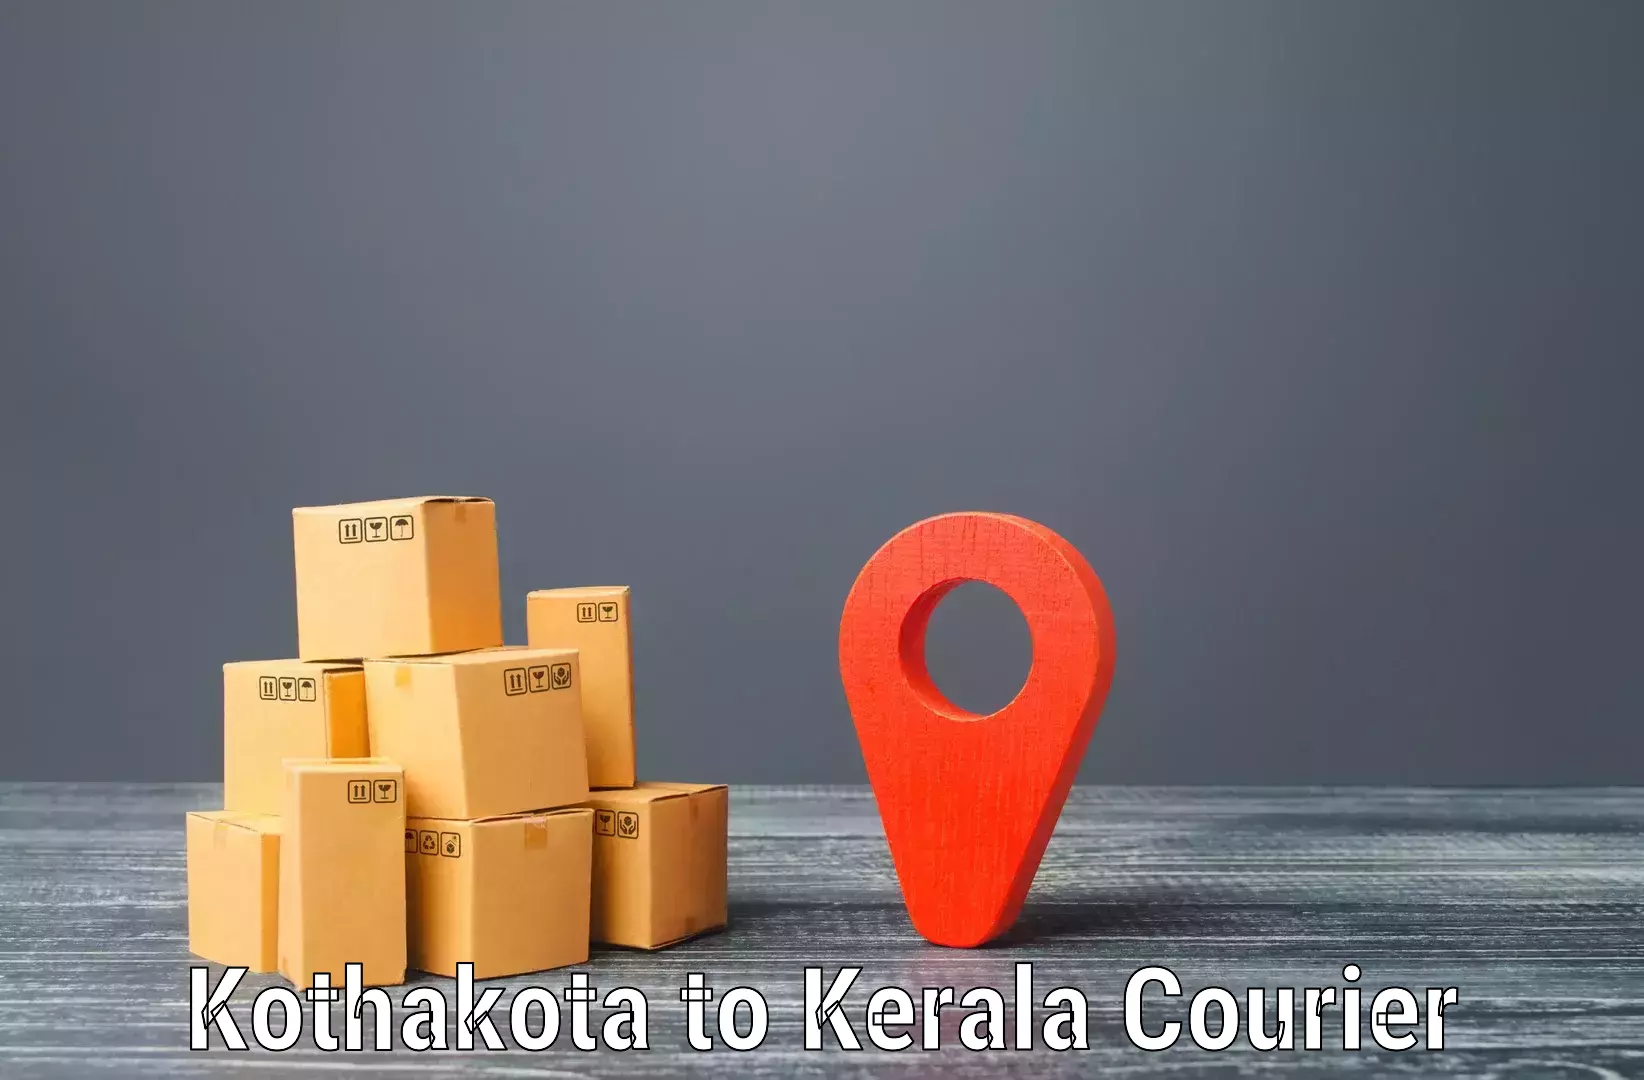 Large package courier Kothakota to Punalur